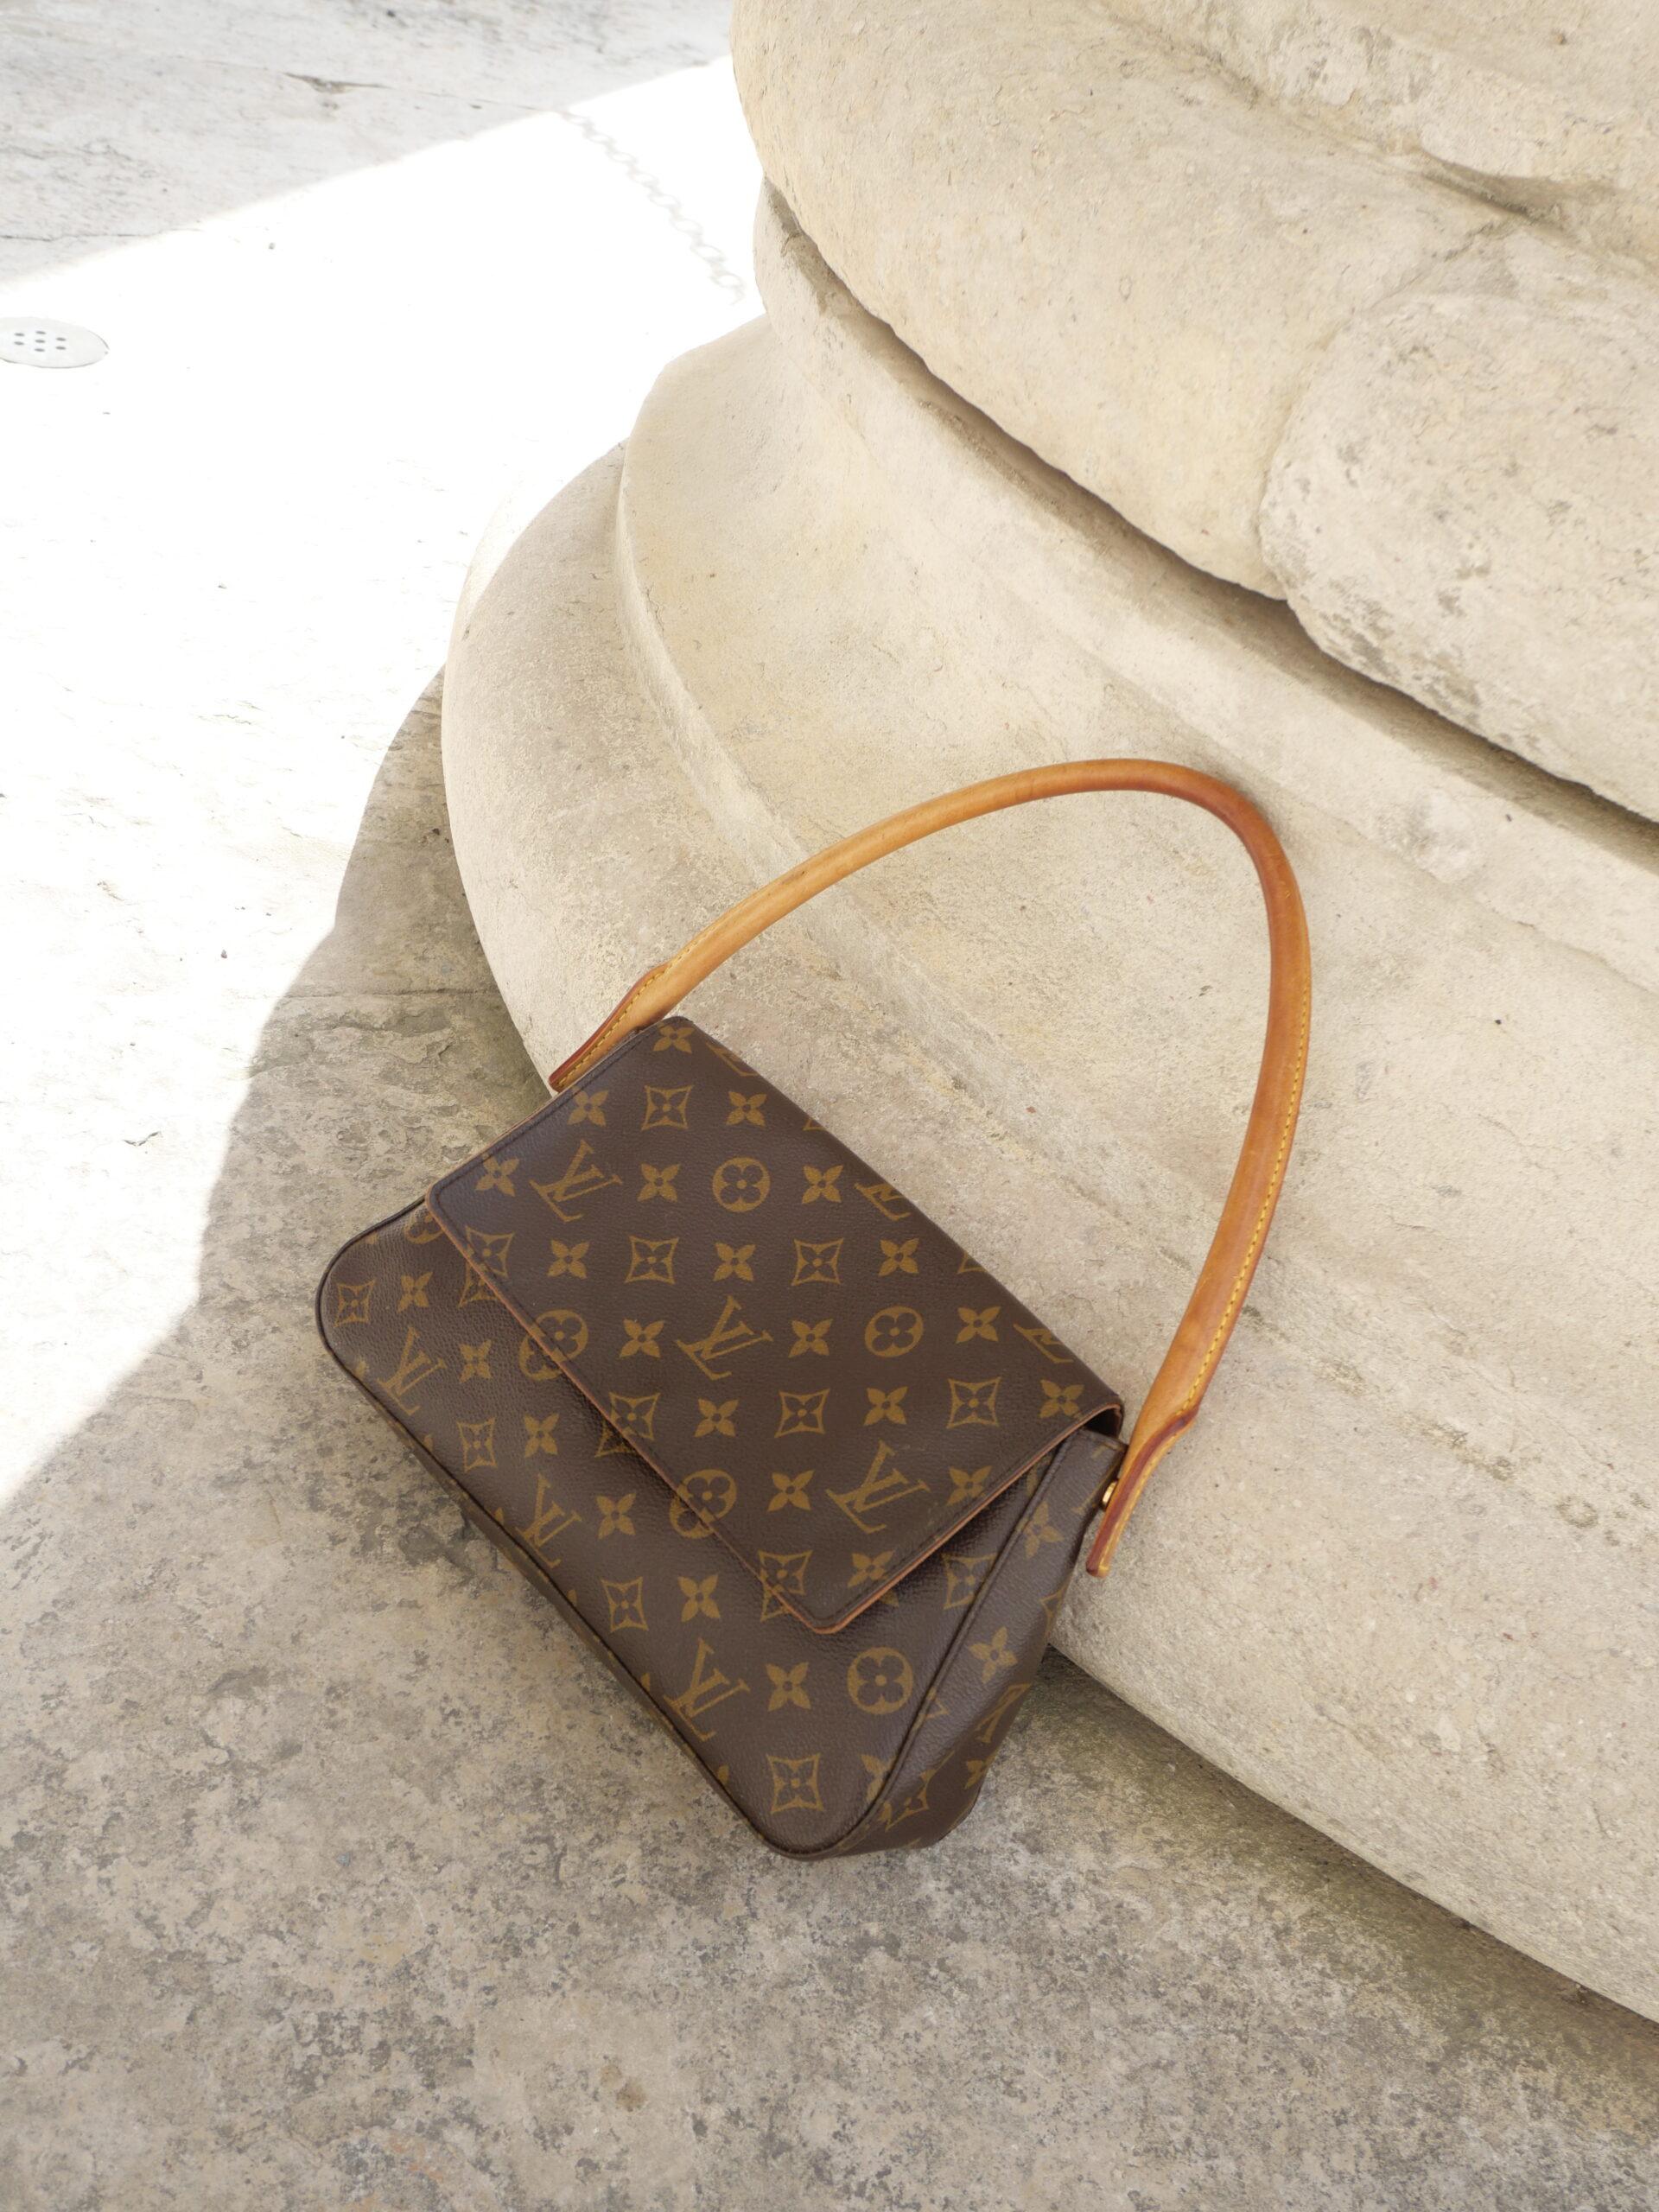 12 Louis-Vuitton-Taschen der neuen Saison, die es wert sind